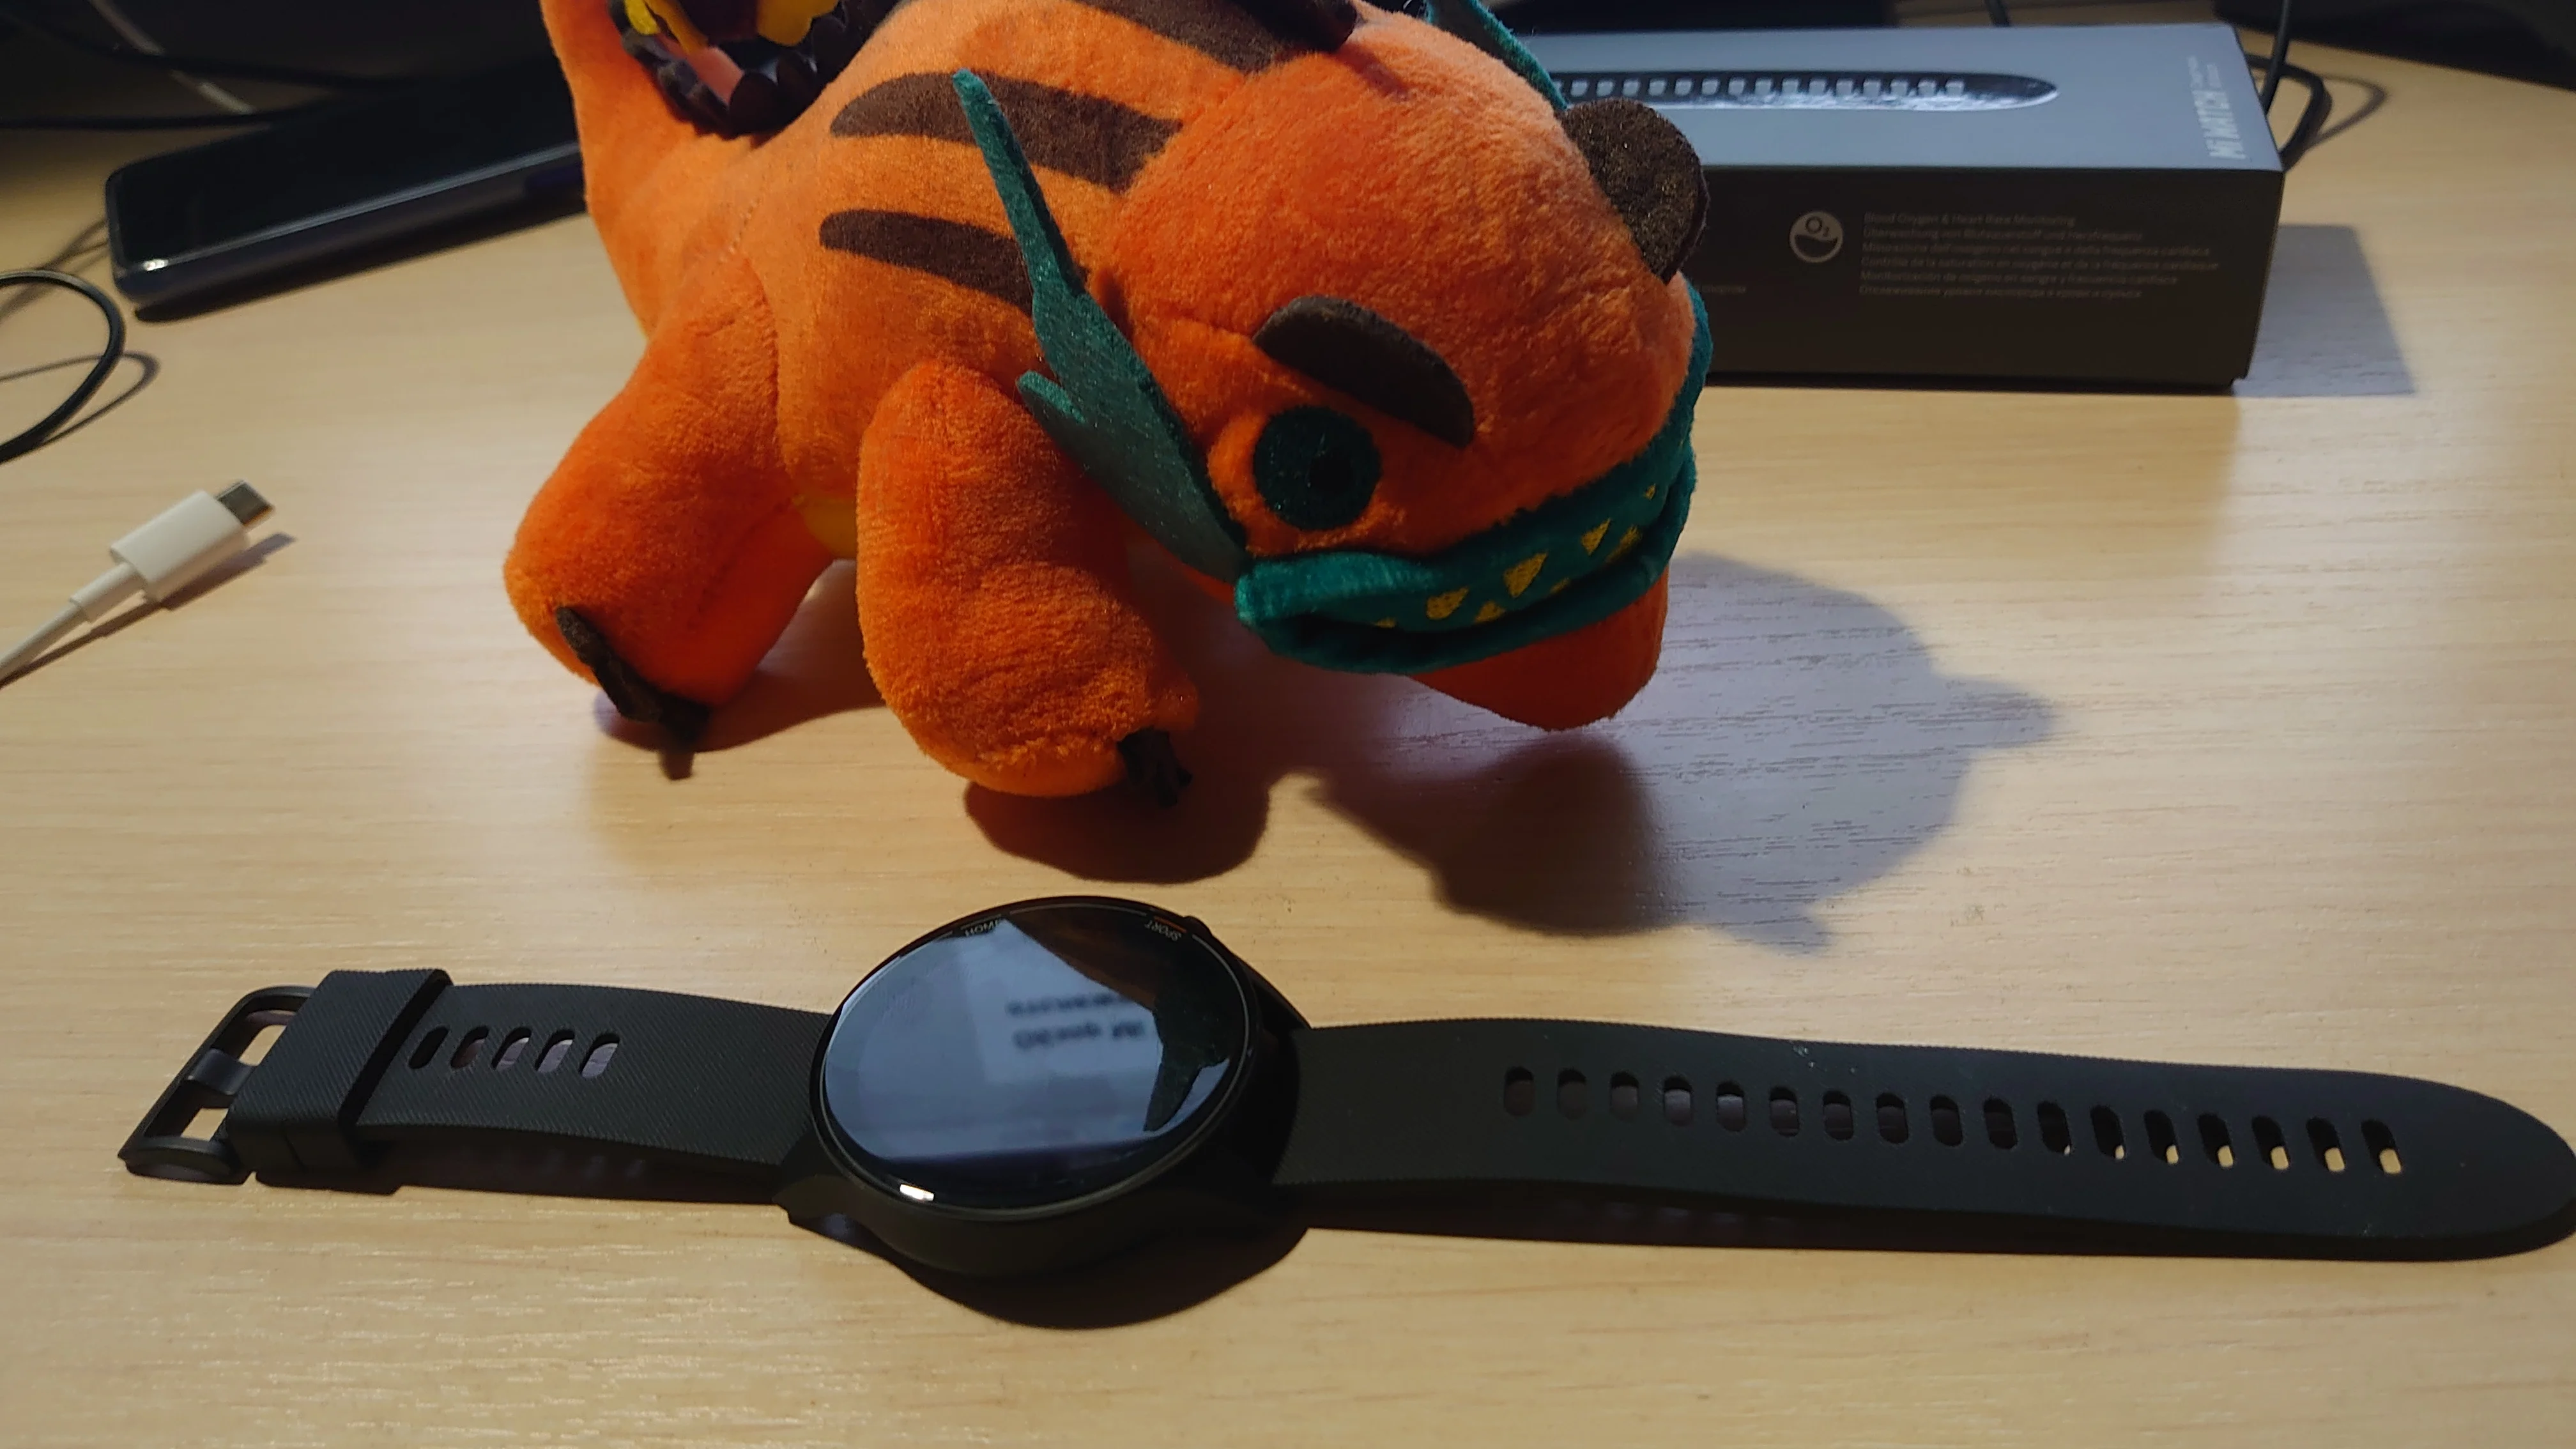 В конце 2020 года Xiaomi выпустила новые «умные» часы — Mi Watch. Наручный гаджет позиционируется как «спутник для активного образа жизни», у него неброский, но современный дизайн. Но чем они могут привлечь, если сравнивать с конкурентами, а чем оттолкнуть? Все детали в материале ниже.